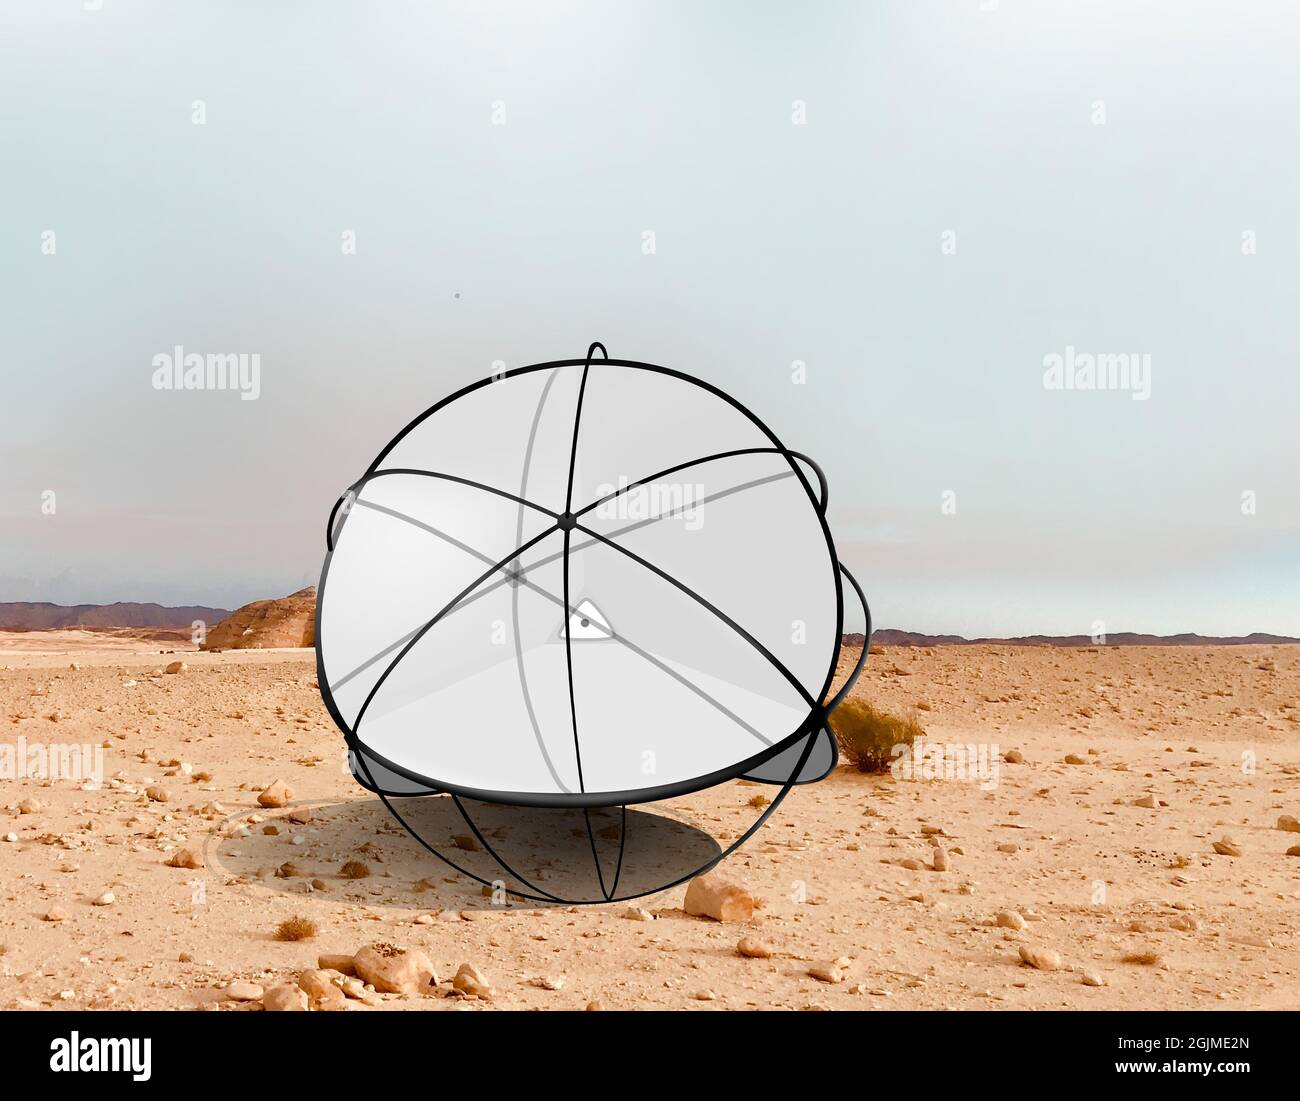 Tumbleweed Robot en el desierto para ayudar a prevenir la desertificación. Bola llena de pequeñas velas que fácilmente atrapan una brisa. Foto de stock